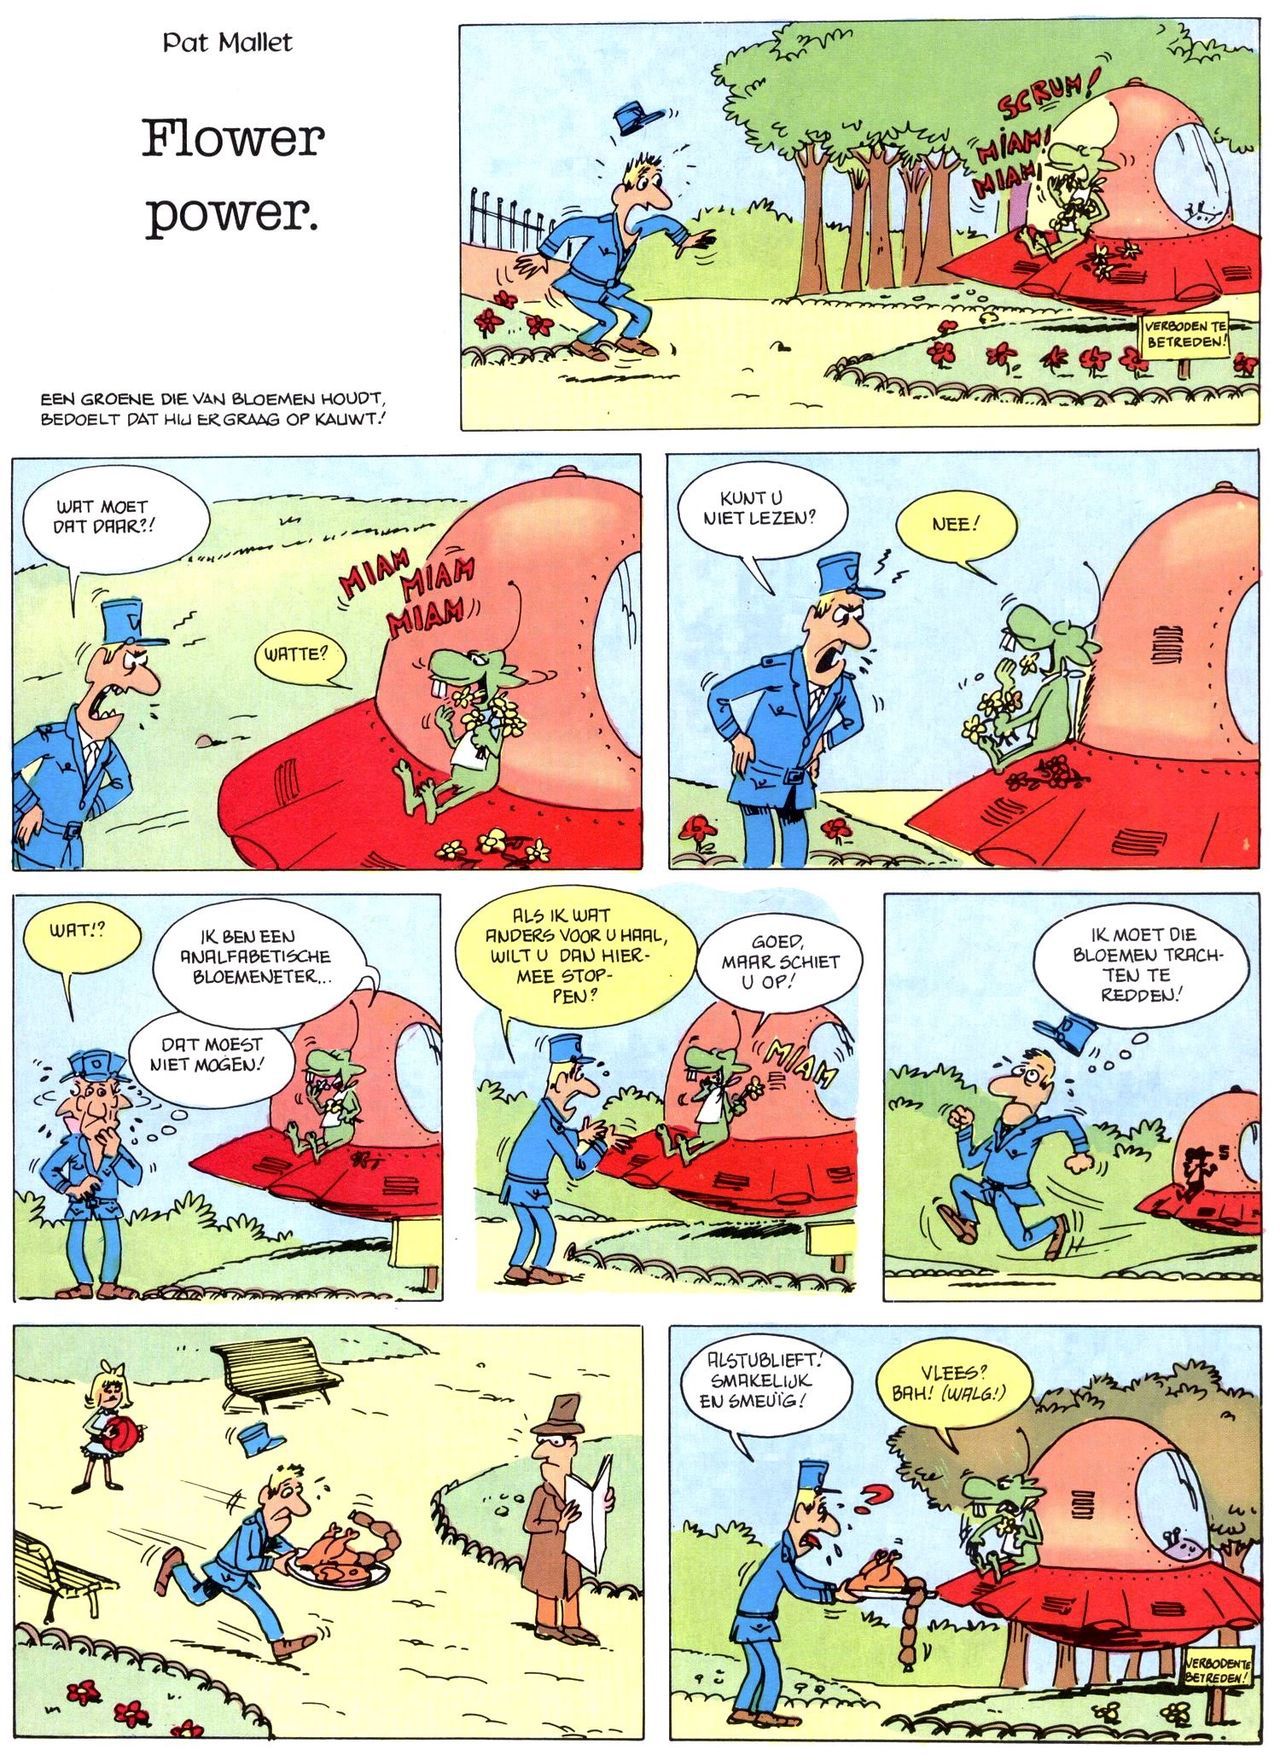 Het Is Groen En Het.. - 02 - Verboden Op Het Gras Te Lopen (Dutch) Een oude humoristische serie van Pat Mallet 39